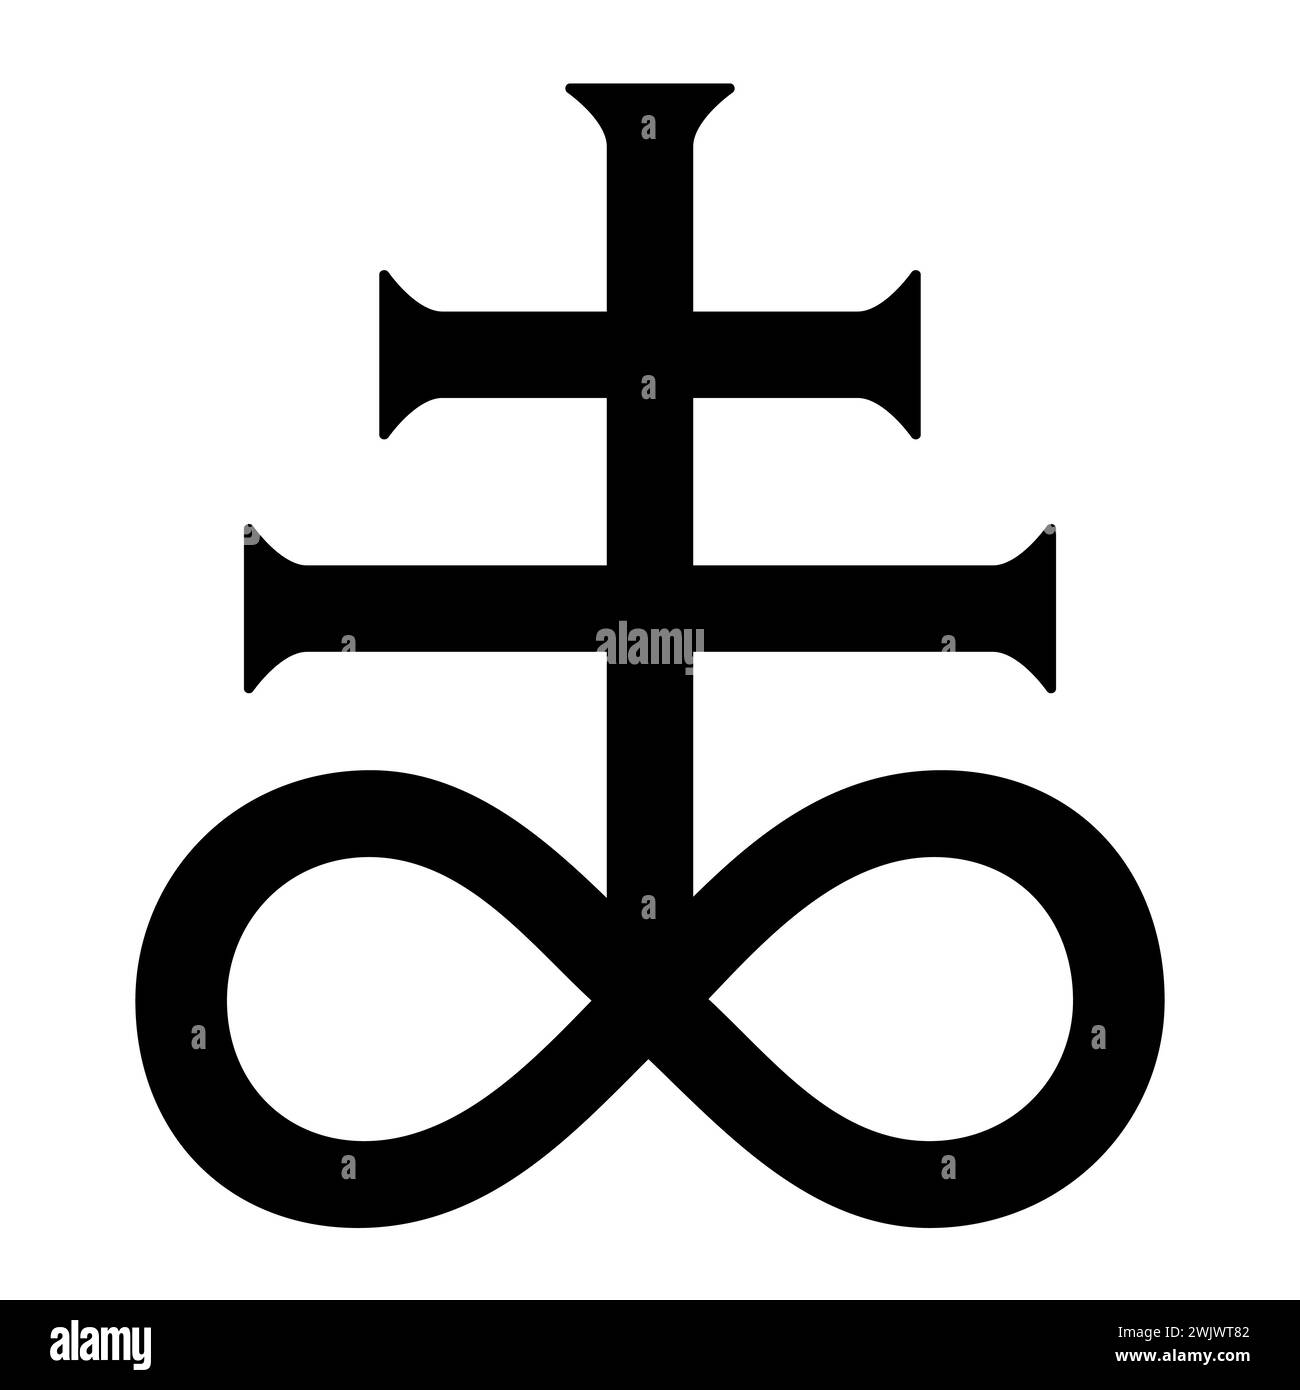 Leviathan Satan Cross, schwarz-weiße Silhouette Illustration des alchemistischen Symbols für Schwefel-schwarzes Schwefel-Symbol Stock Vektor